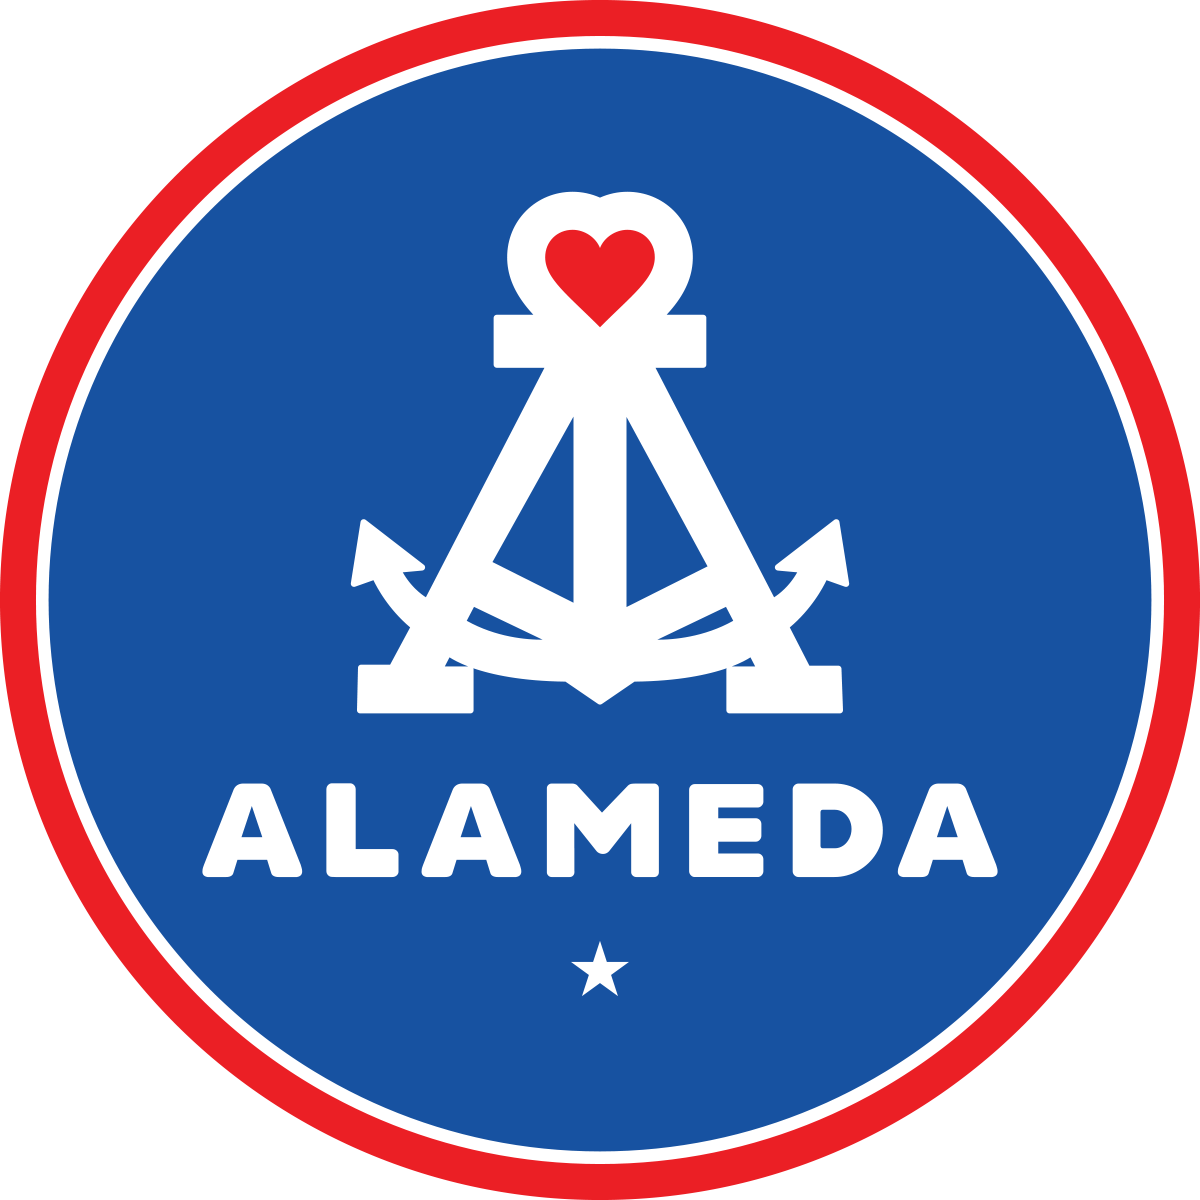 alameda-heart-2inch-logo.png